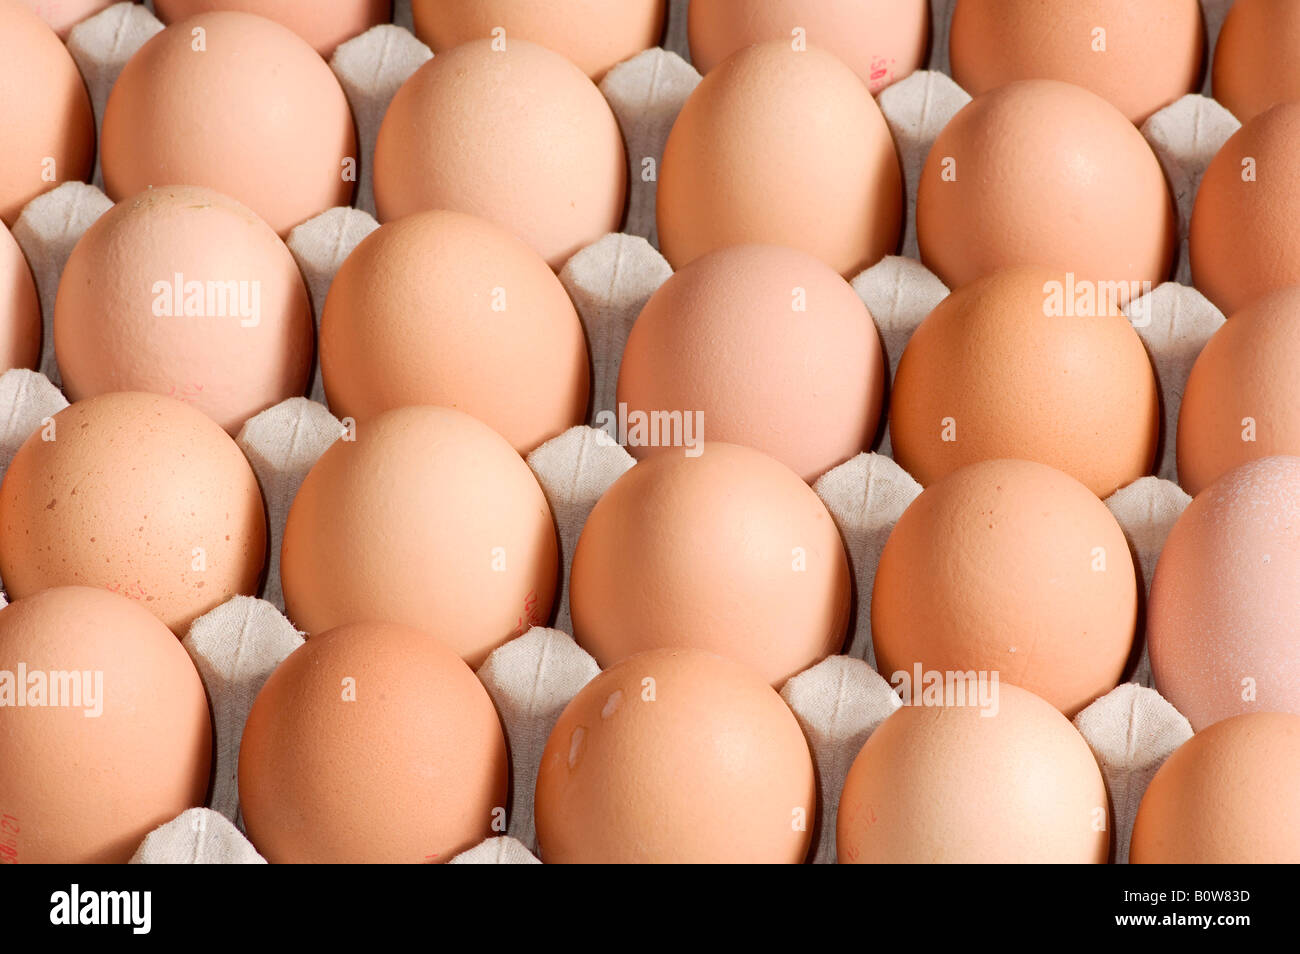 Brown eggs in an egg carton Stock Photo